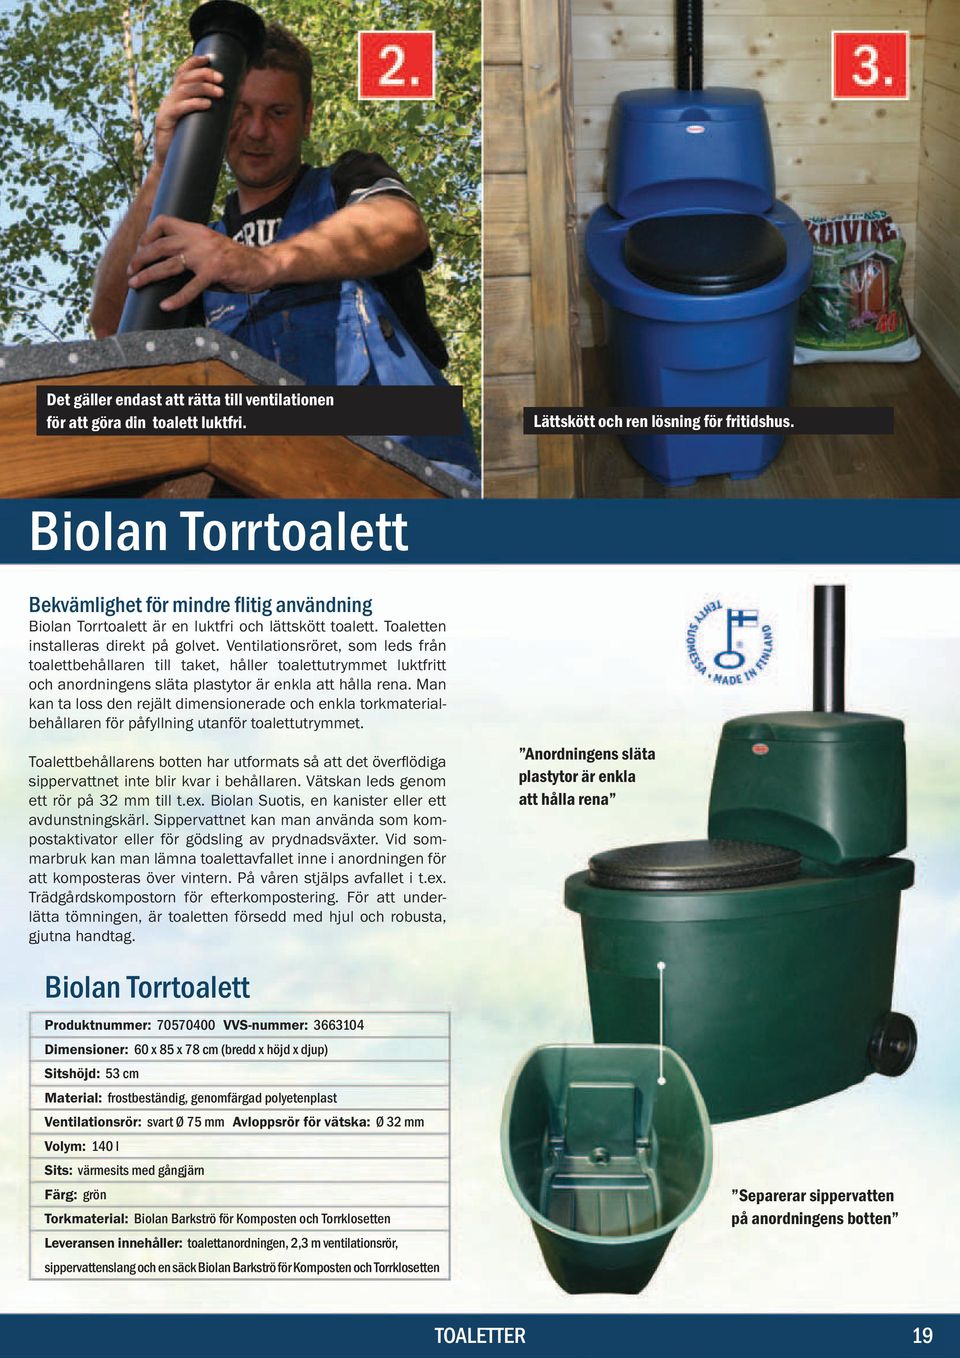 toalettutrymmet. sippervattnet inte blir kvar i behållaren. Vätskan leds genom ett rör på 32 mm till t.ex. Biolan Suotis, en kanister eller ett avdunstningskärl.